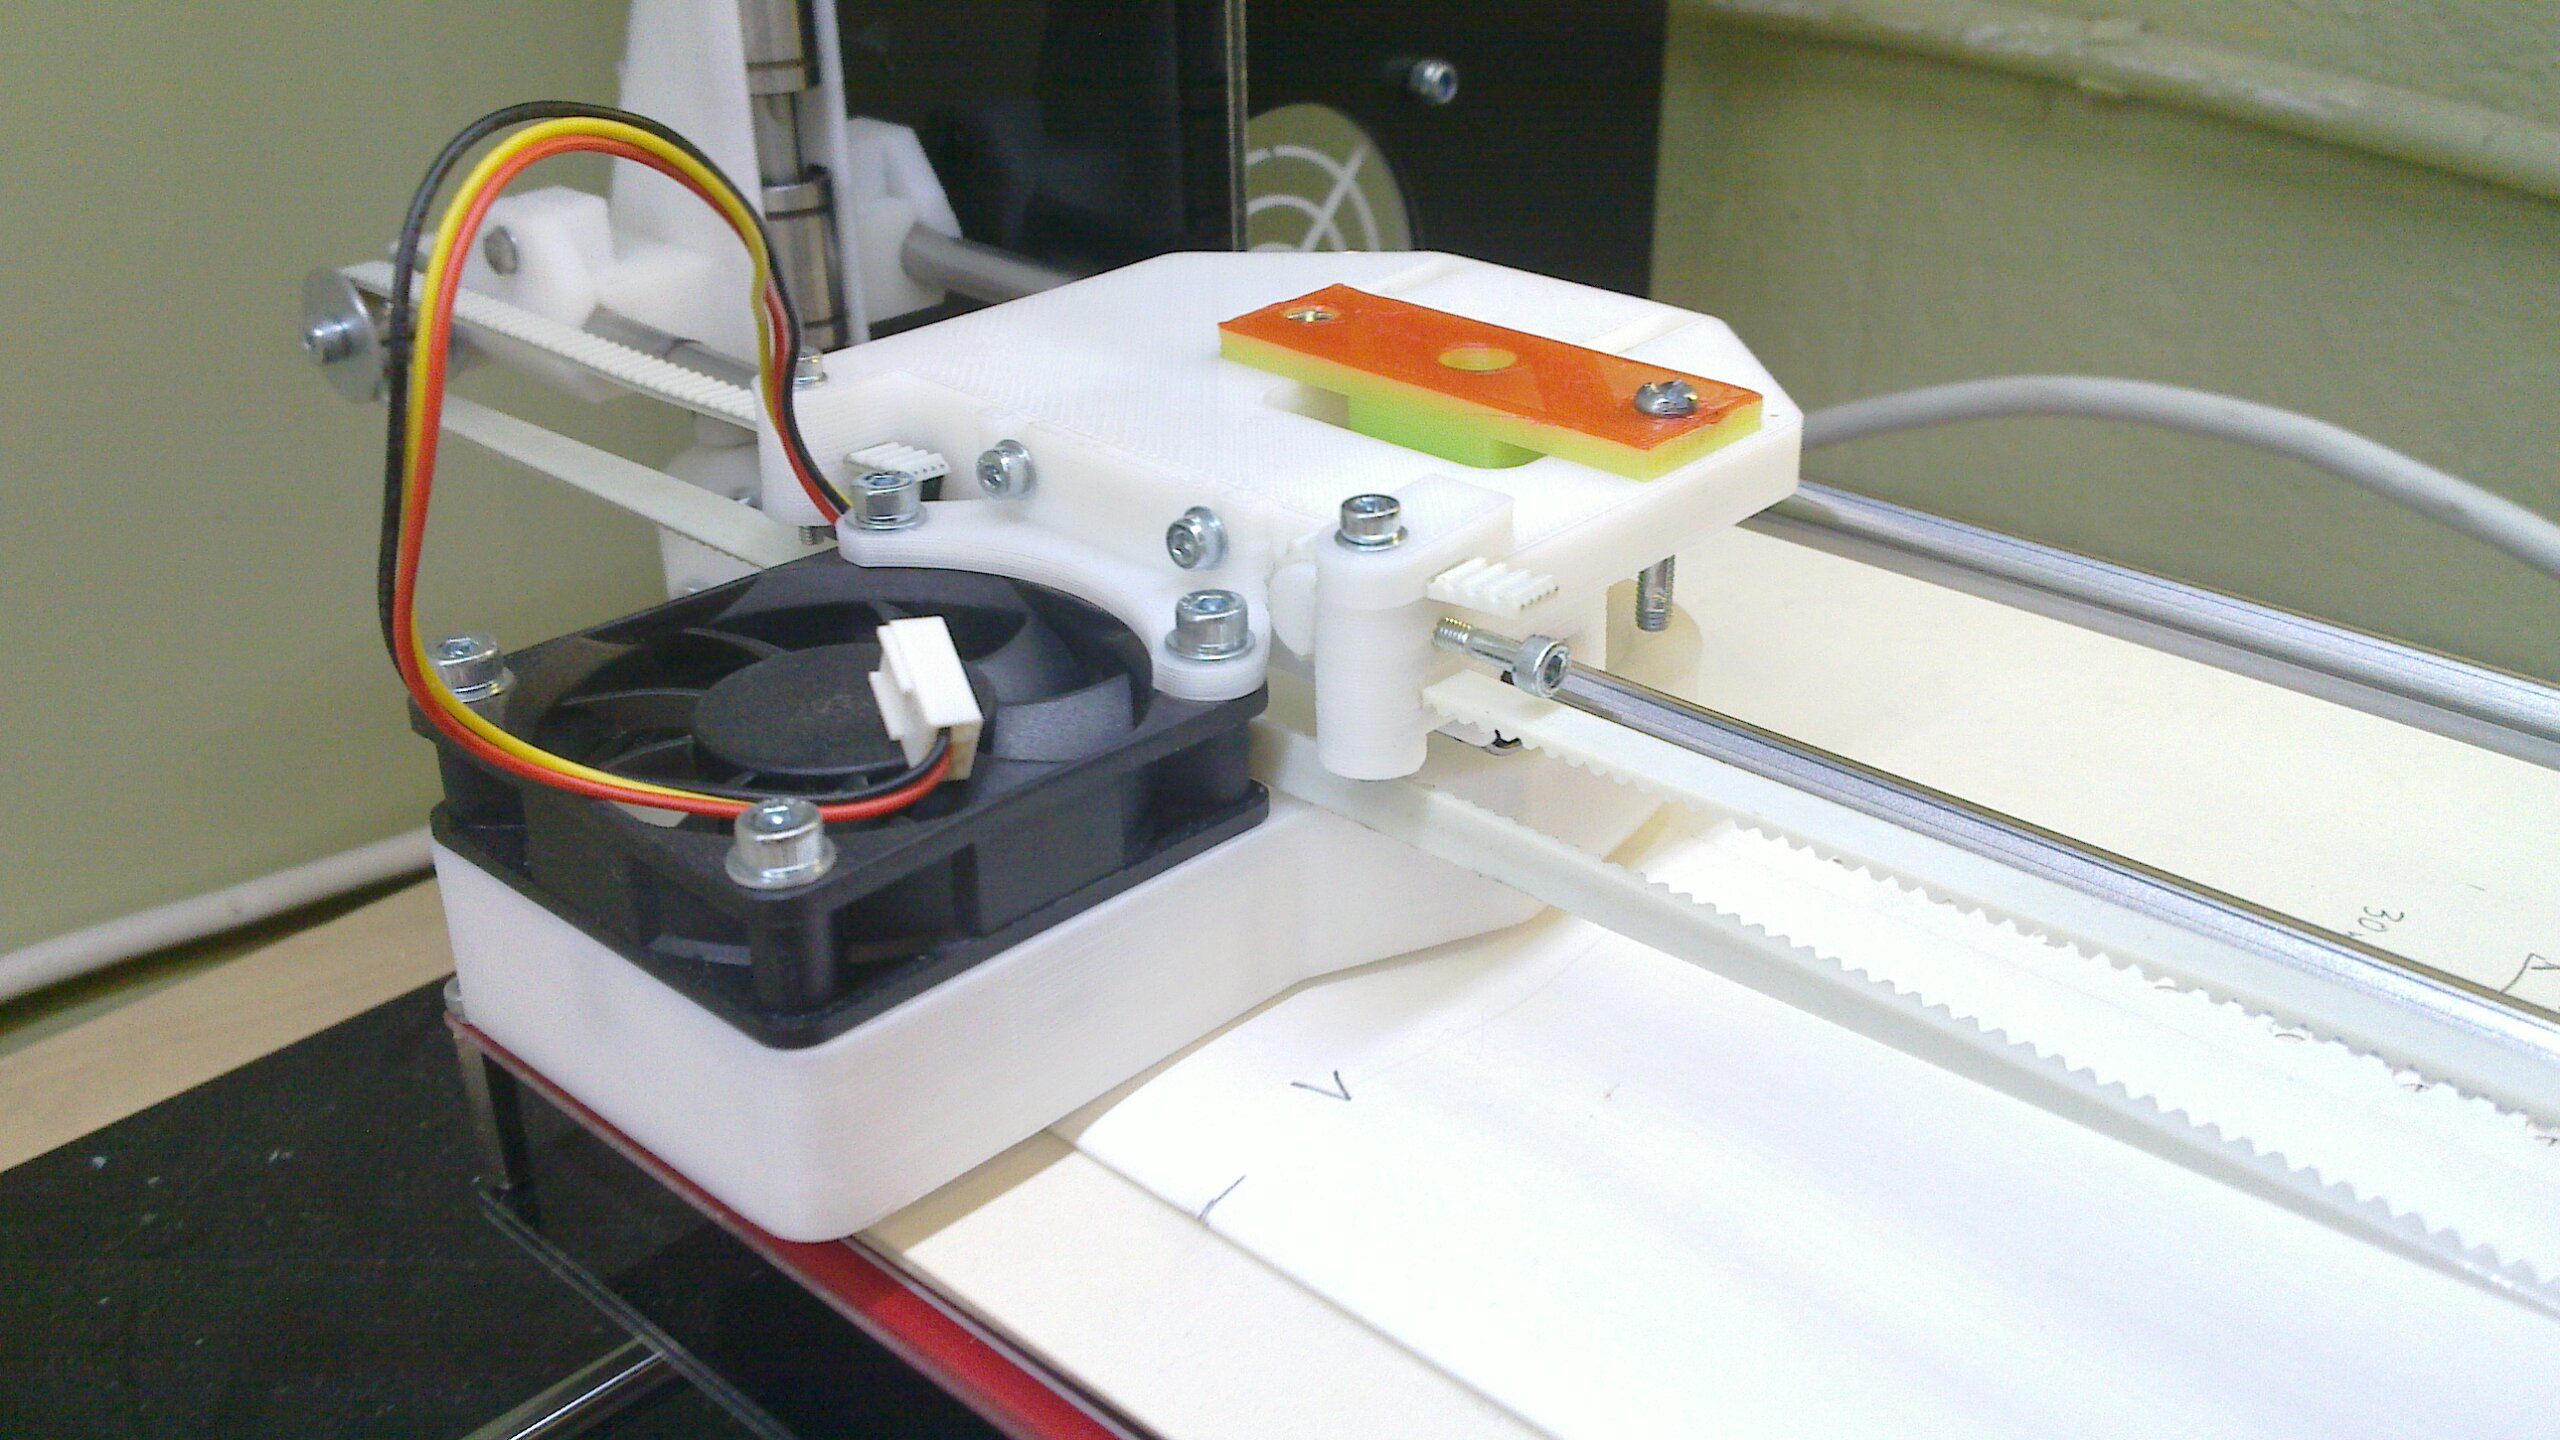 Vinyl cutter blade mounted